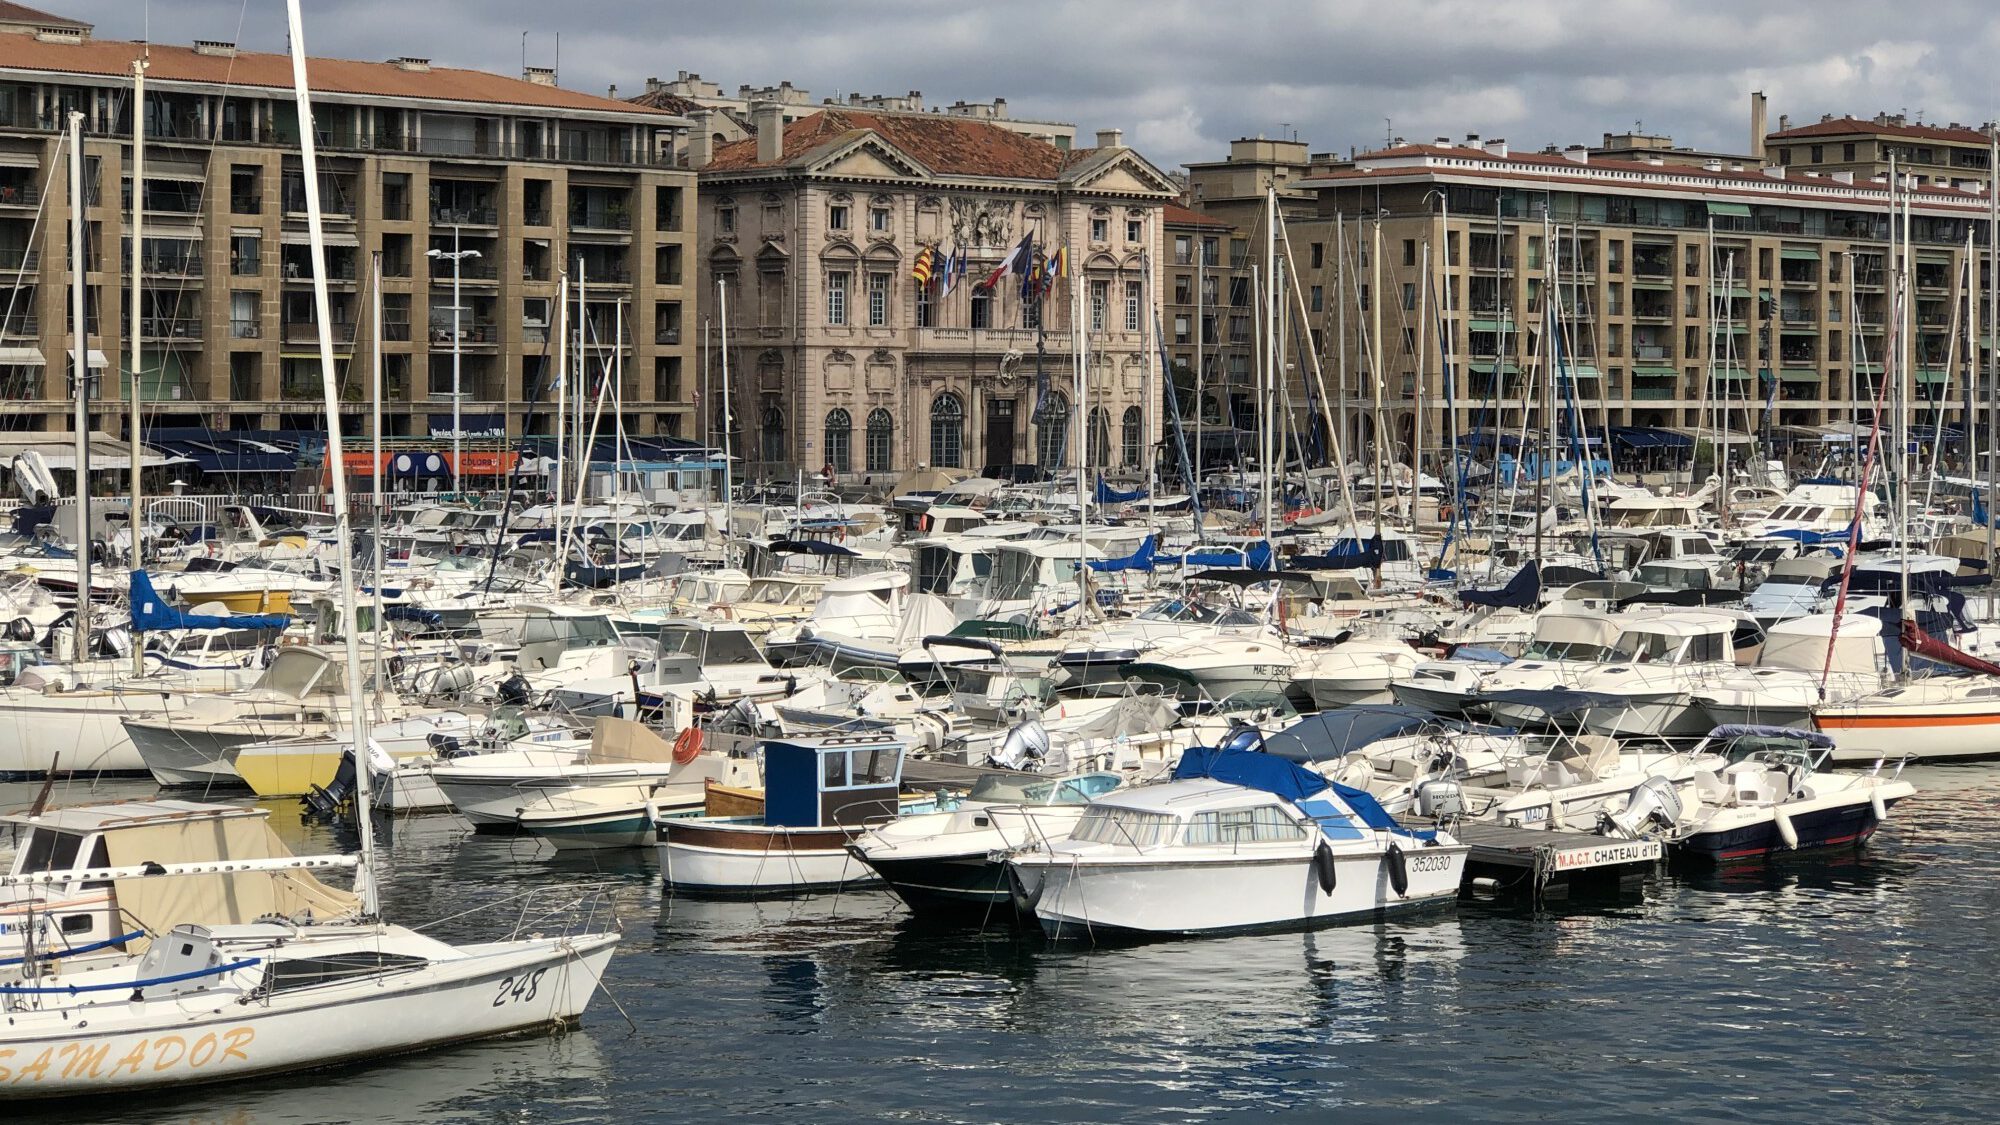 Impression aus dem alten Hafen von Marseille. (Foto: privat)